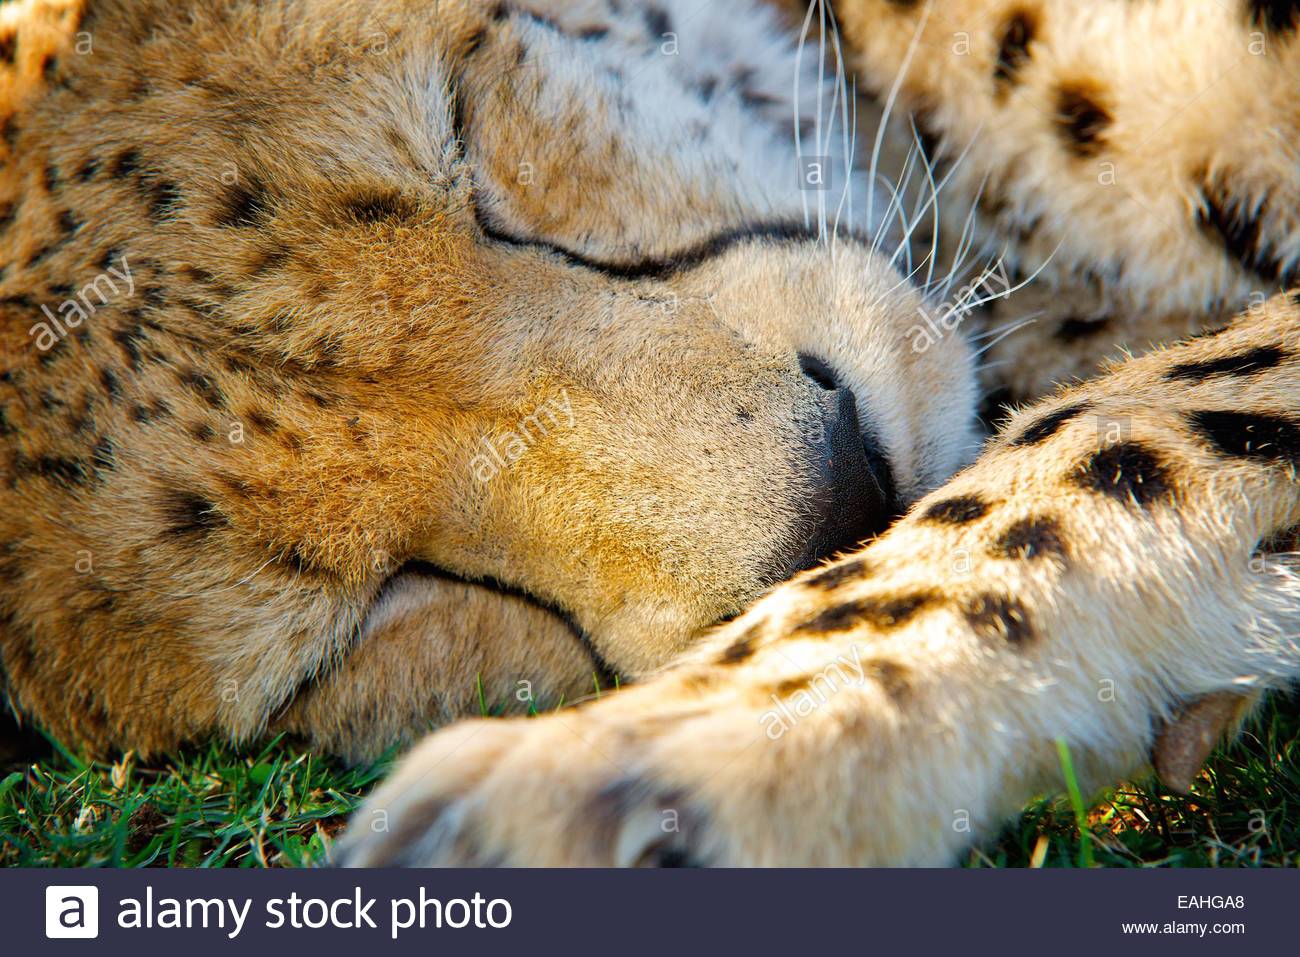 cheetah sleeping